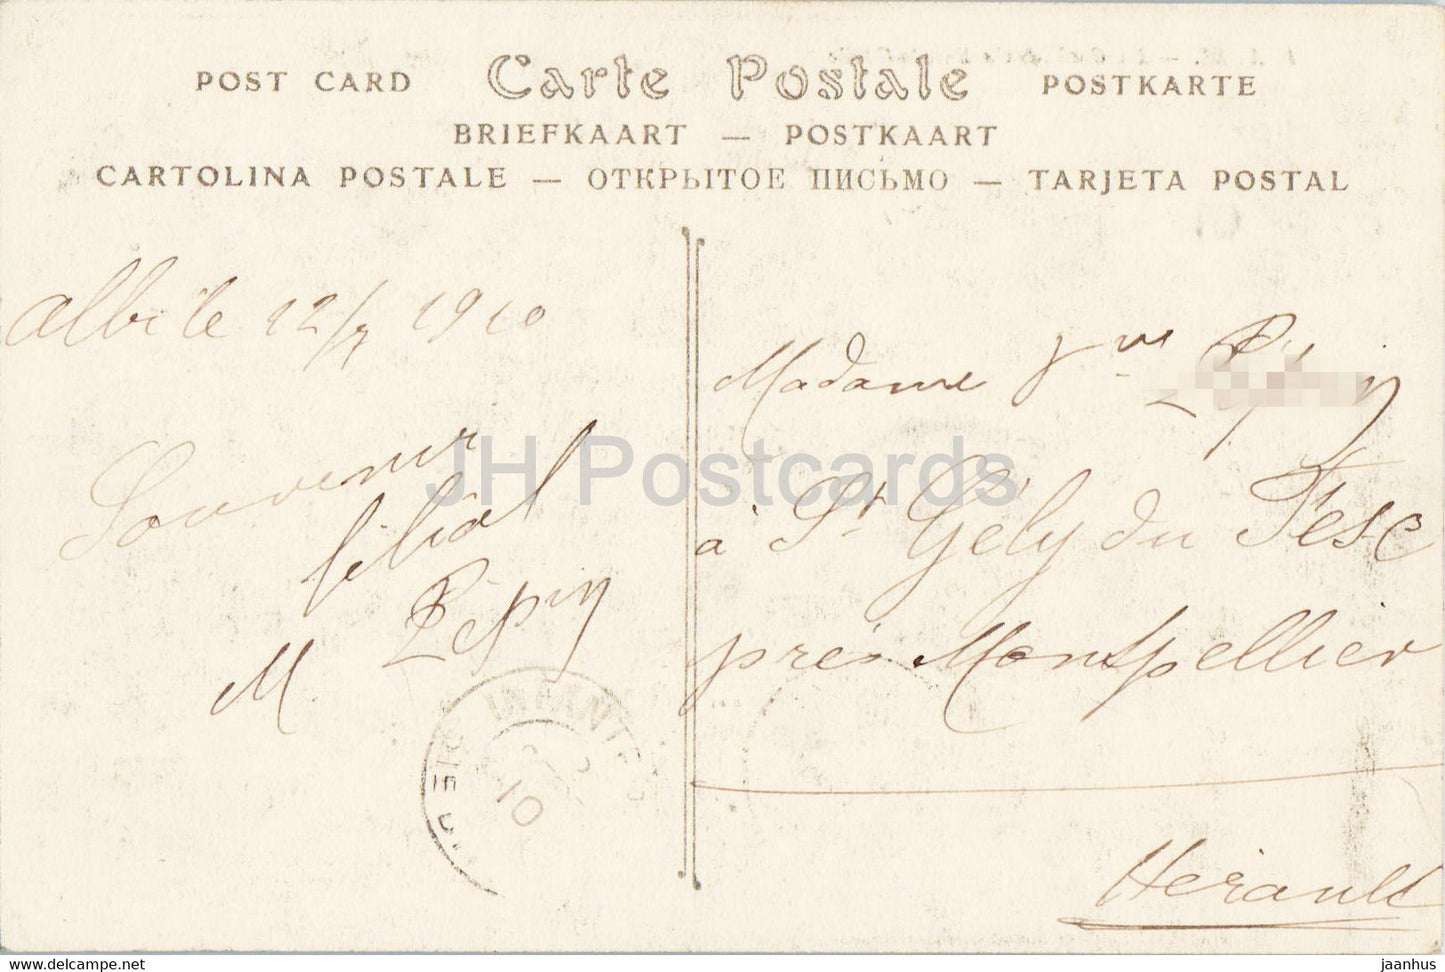 Albi - La Cathédrale Sainte Cécile - cathédrale - 1 - carte postale ancienne - 1910 - France - occasion